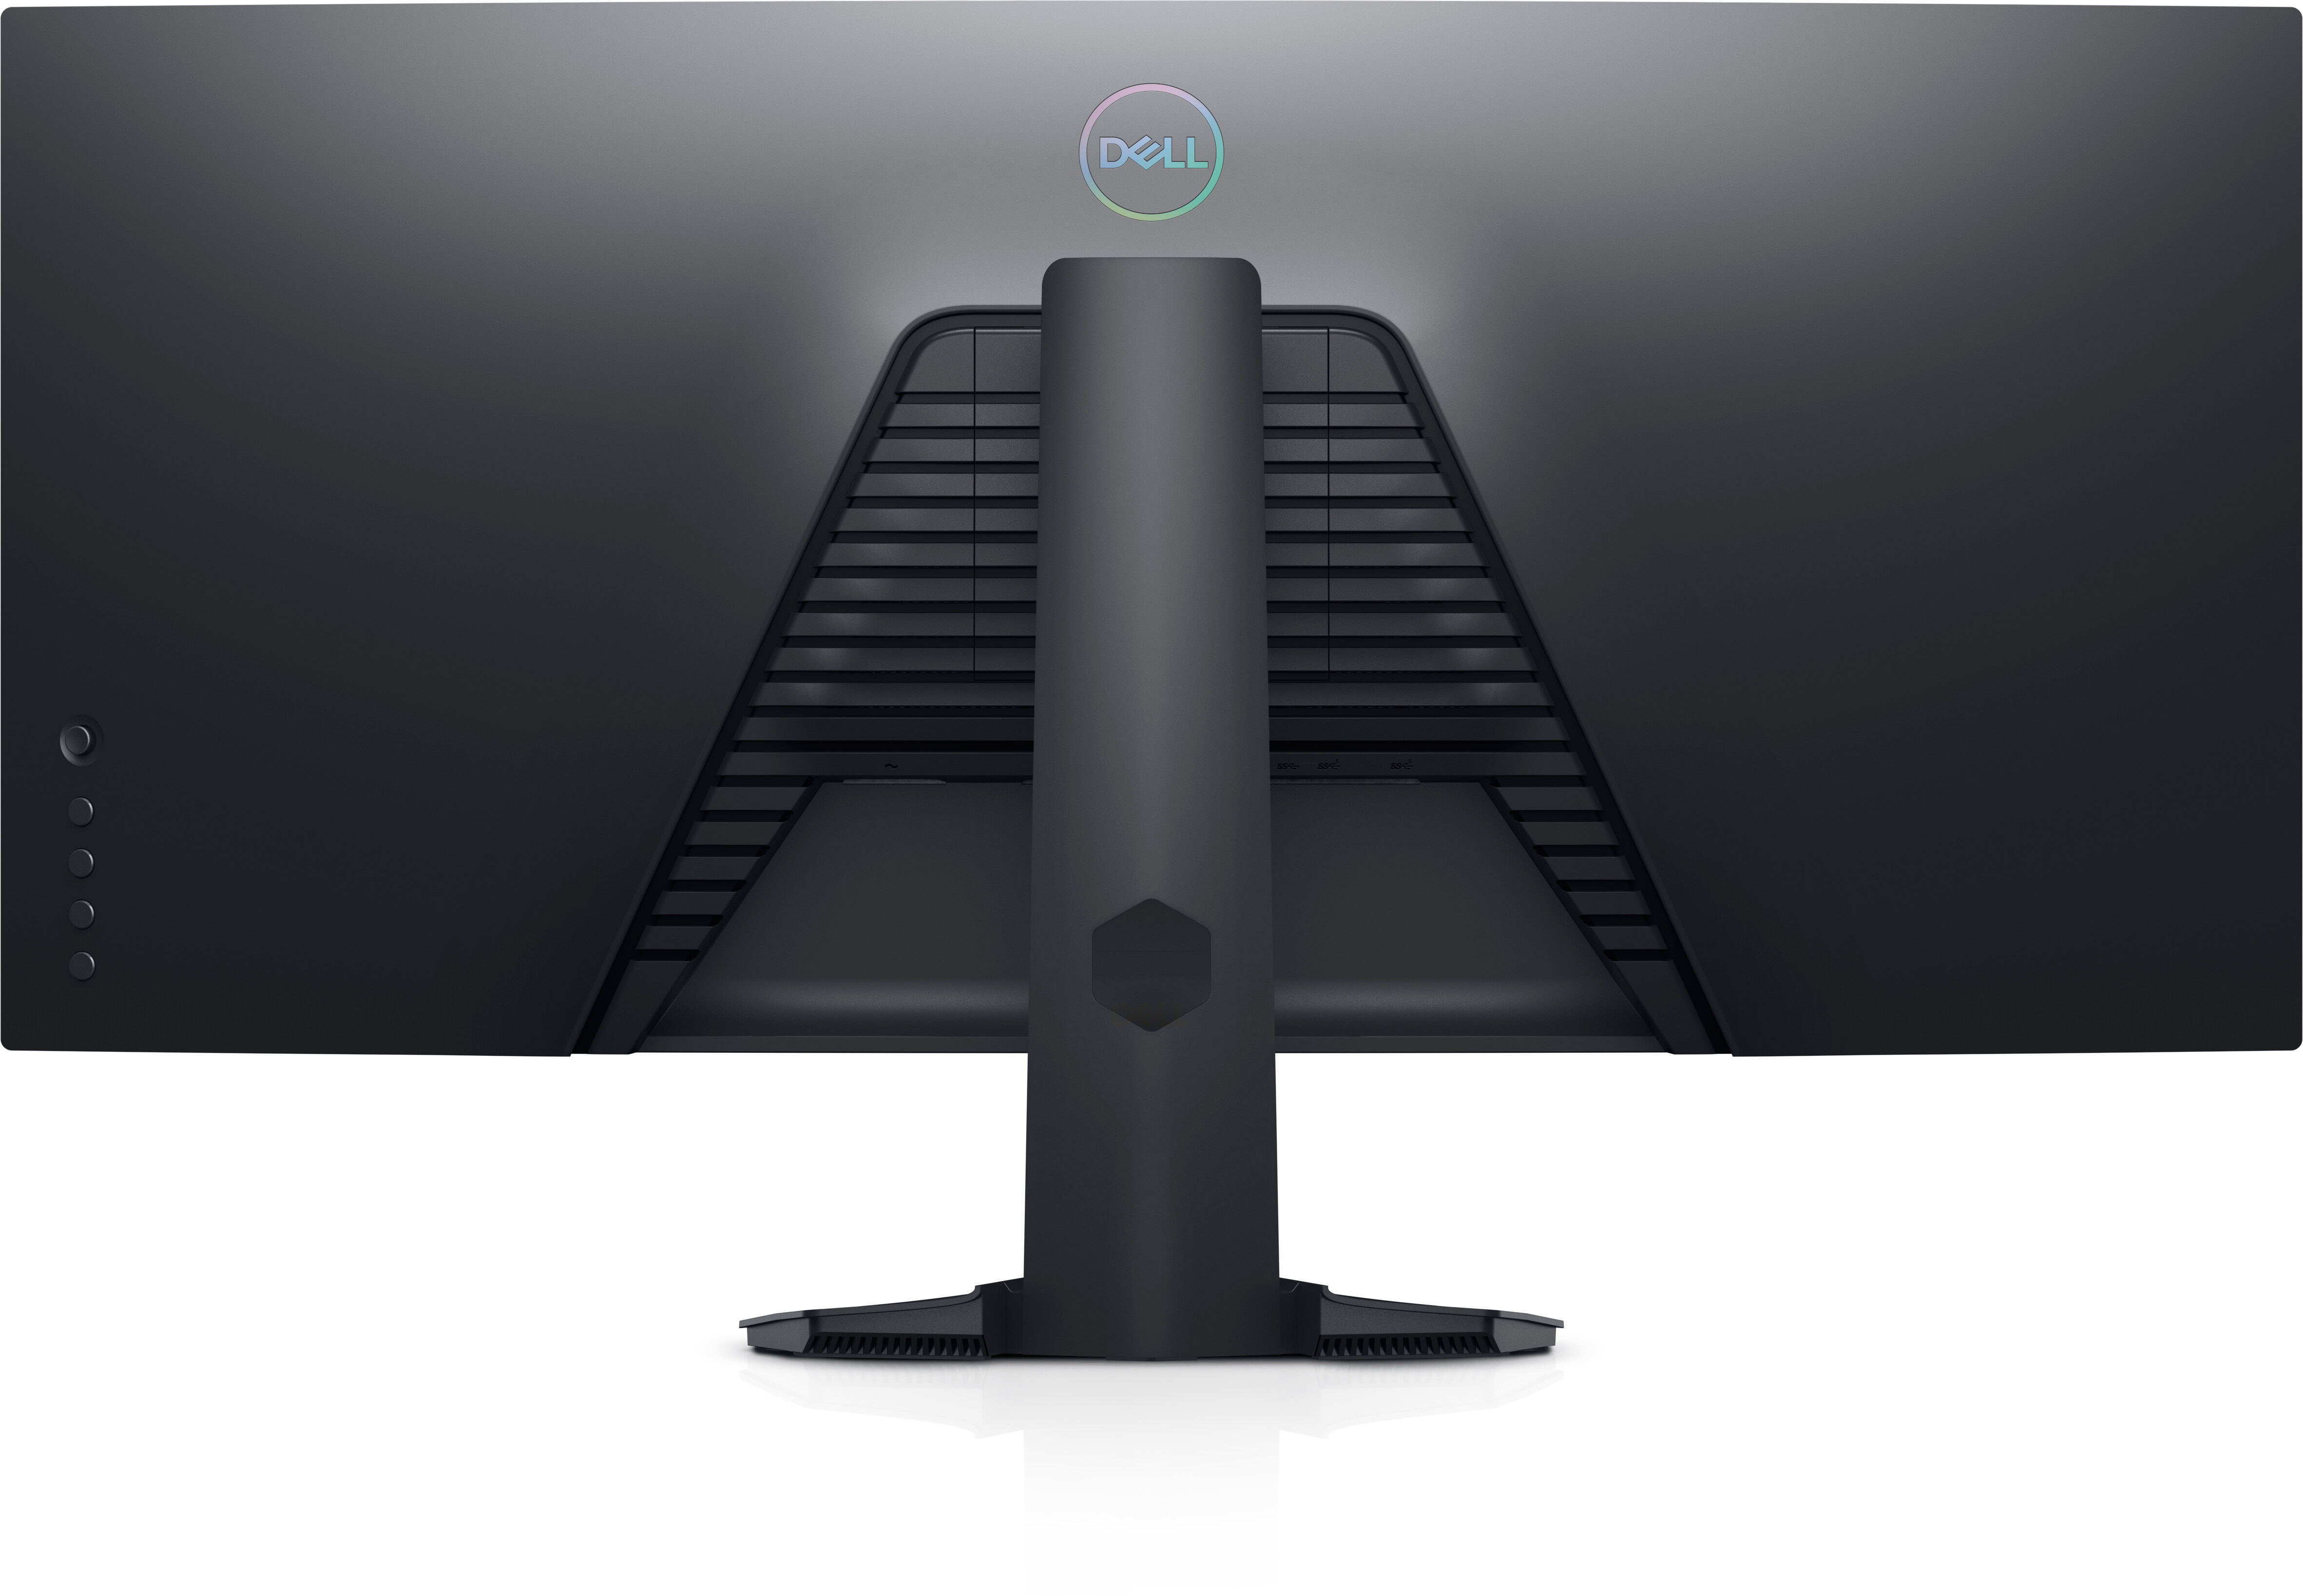  Dell Monitor curvo S3422DW - Pantalla WQHD de 34 pulgadas (3440  x 1440), pantalla curva 1800R, altavoces duales integrados de 5 W, tiempo  de respuesta de 4 ms de gris a